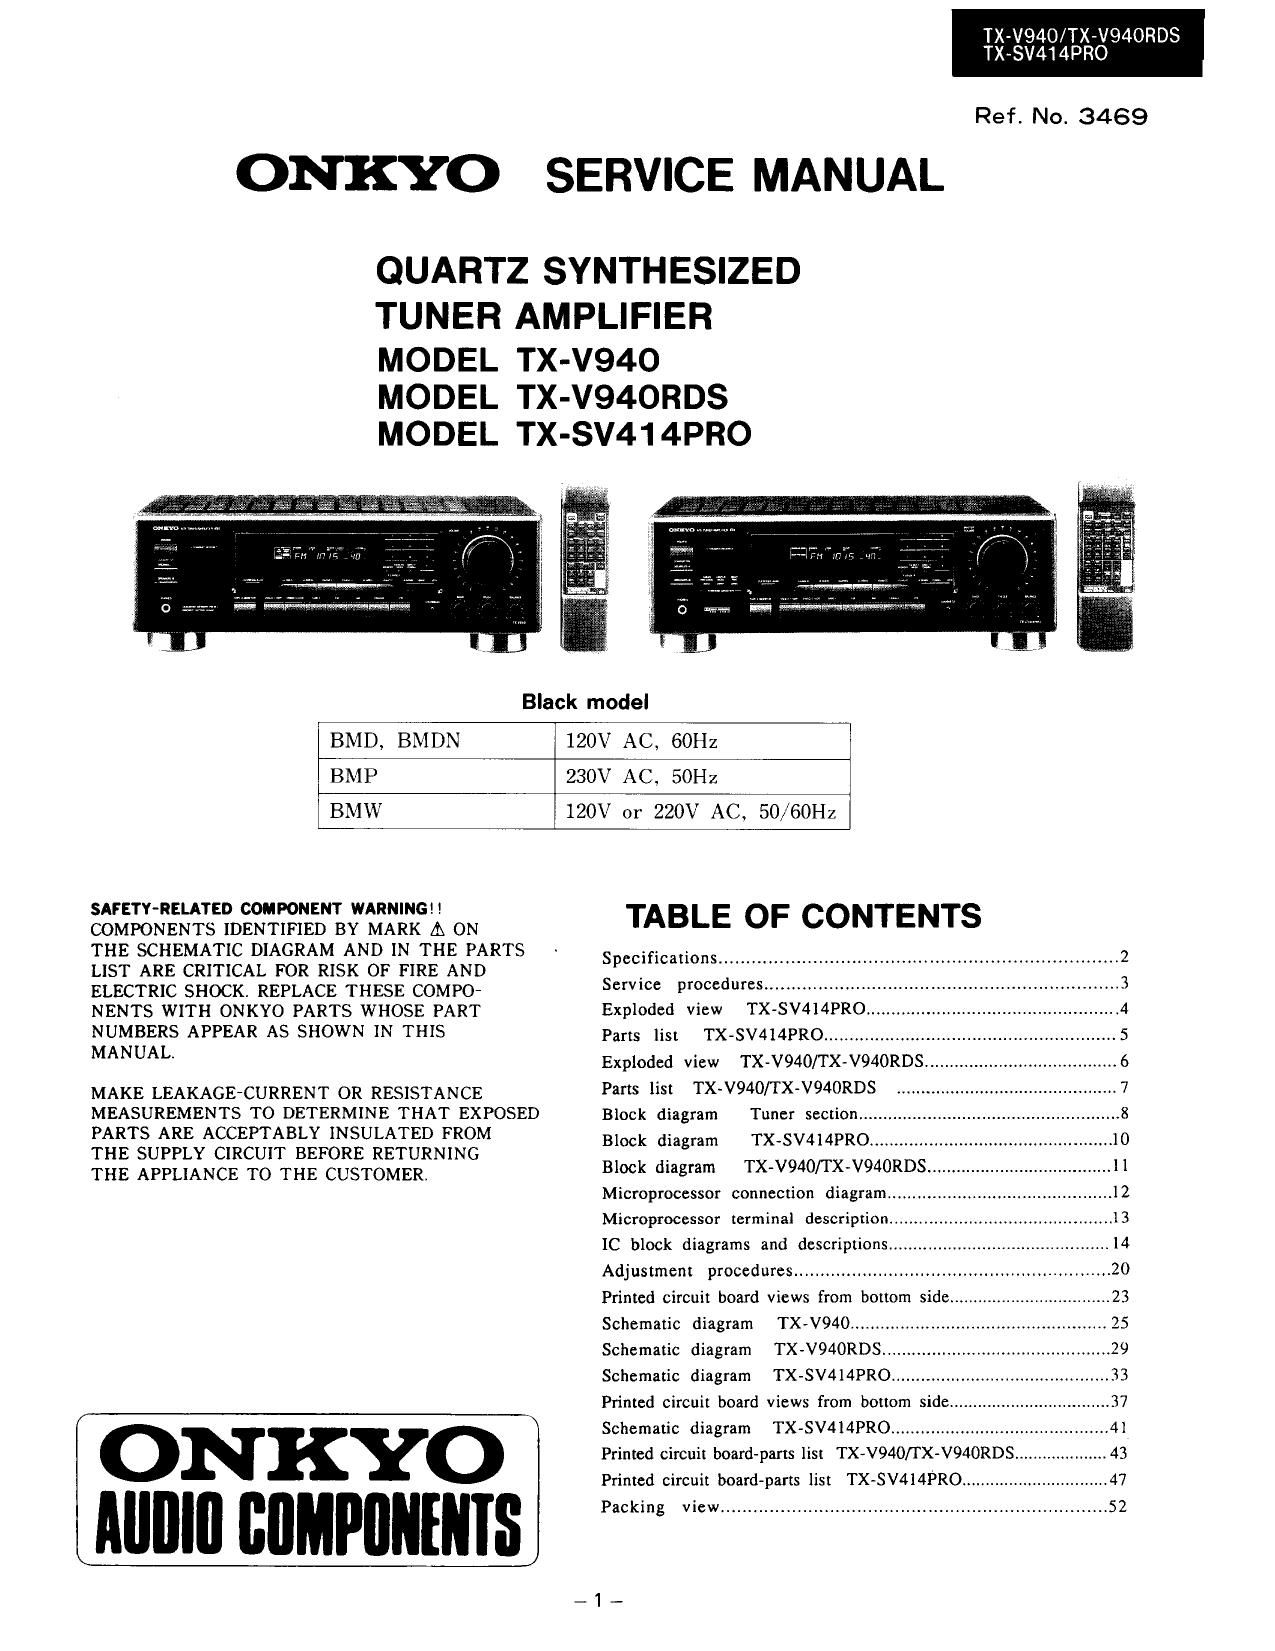 Onkyo TXSV 414 PRO Service Manual